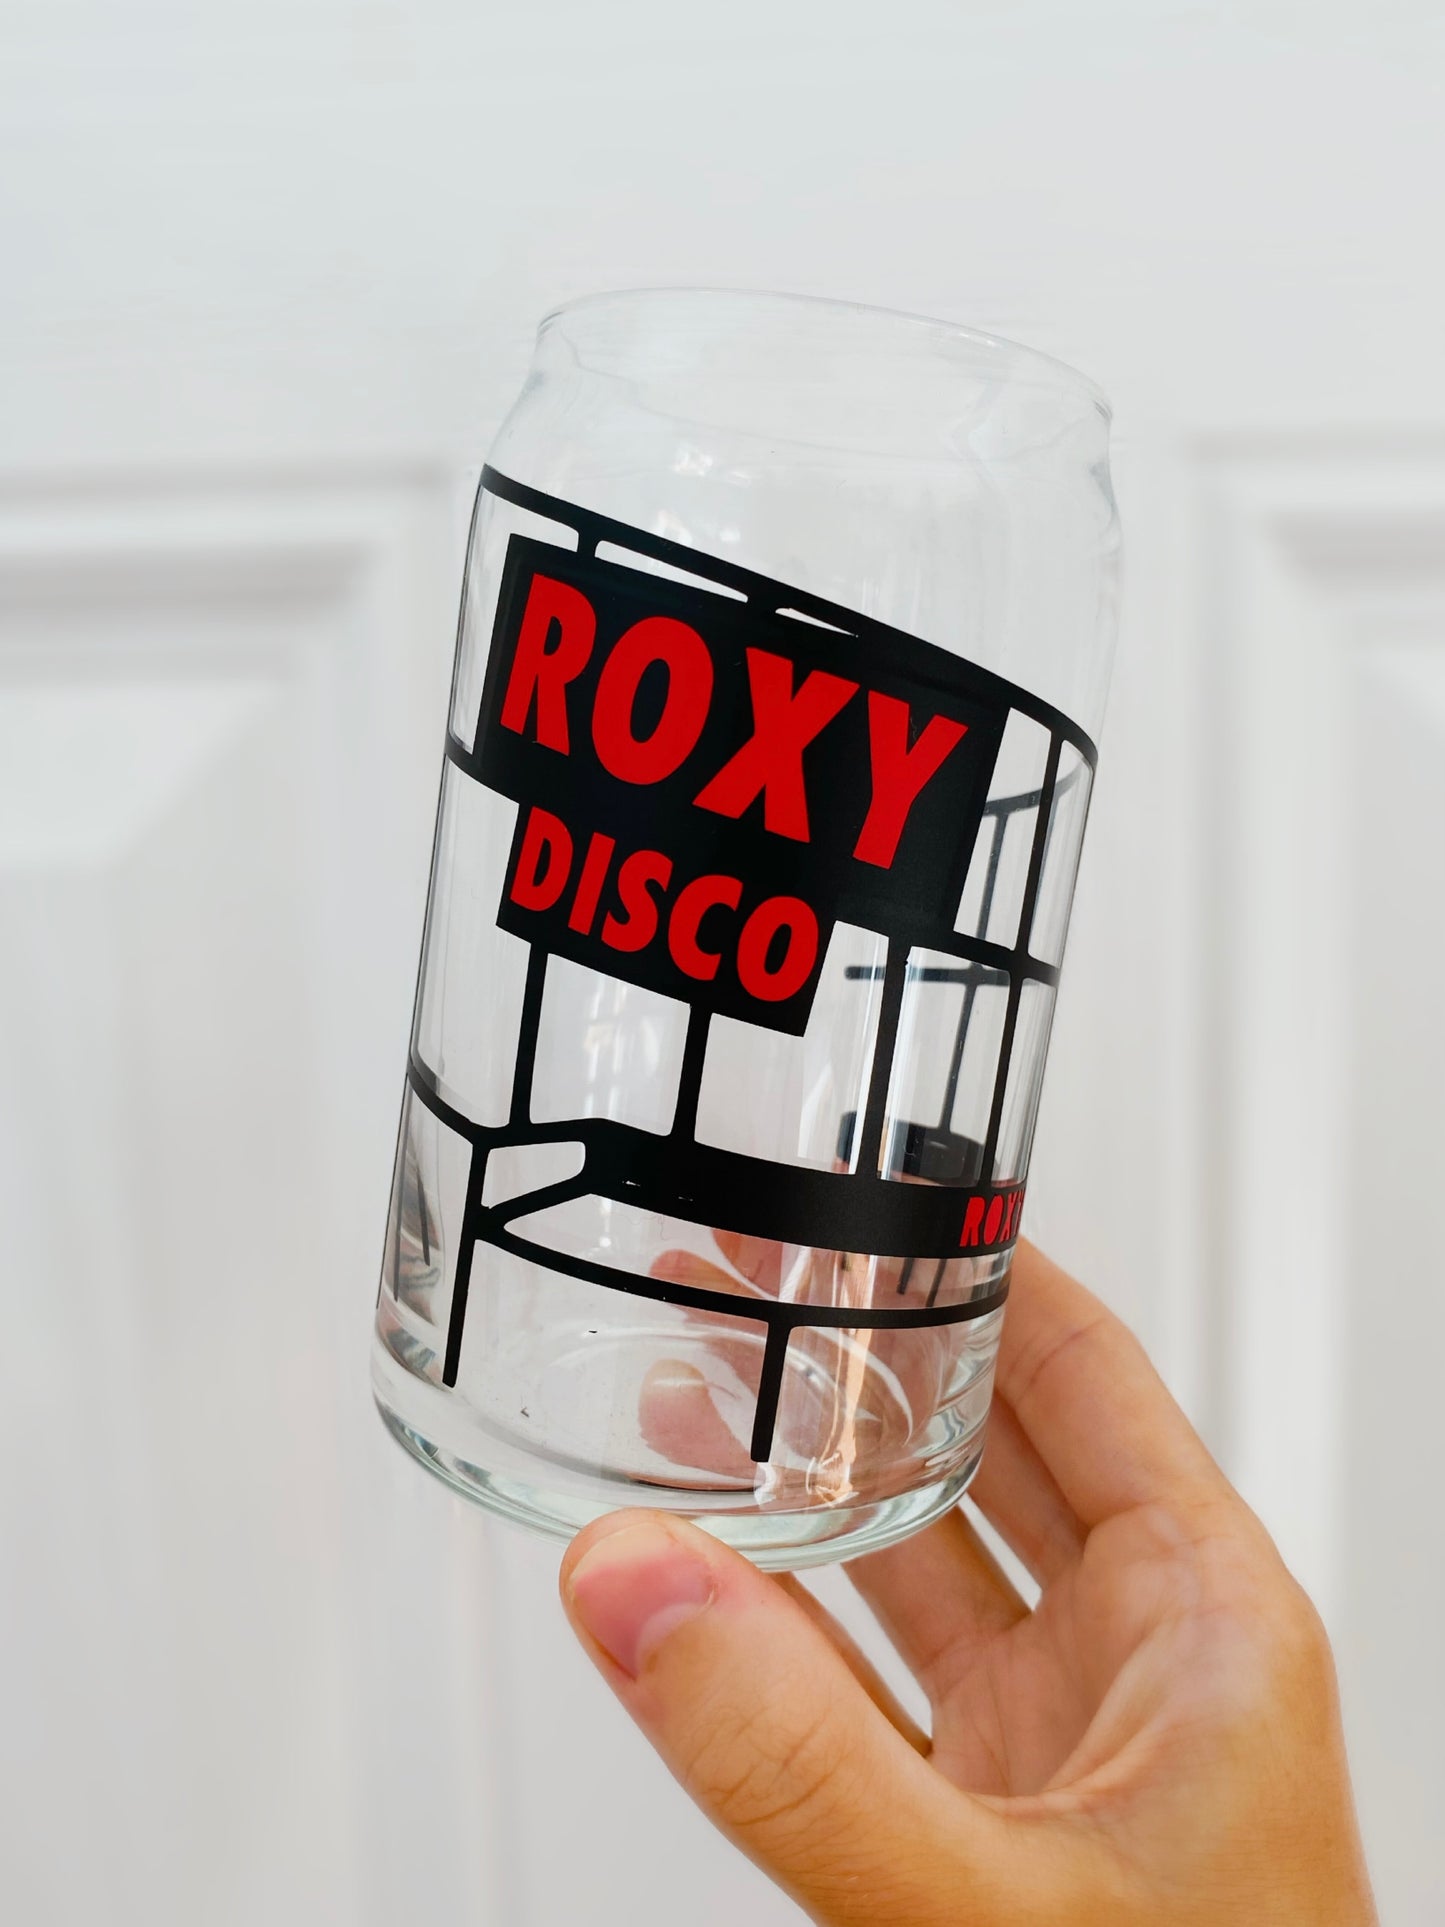 Roxy Glass